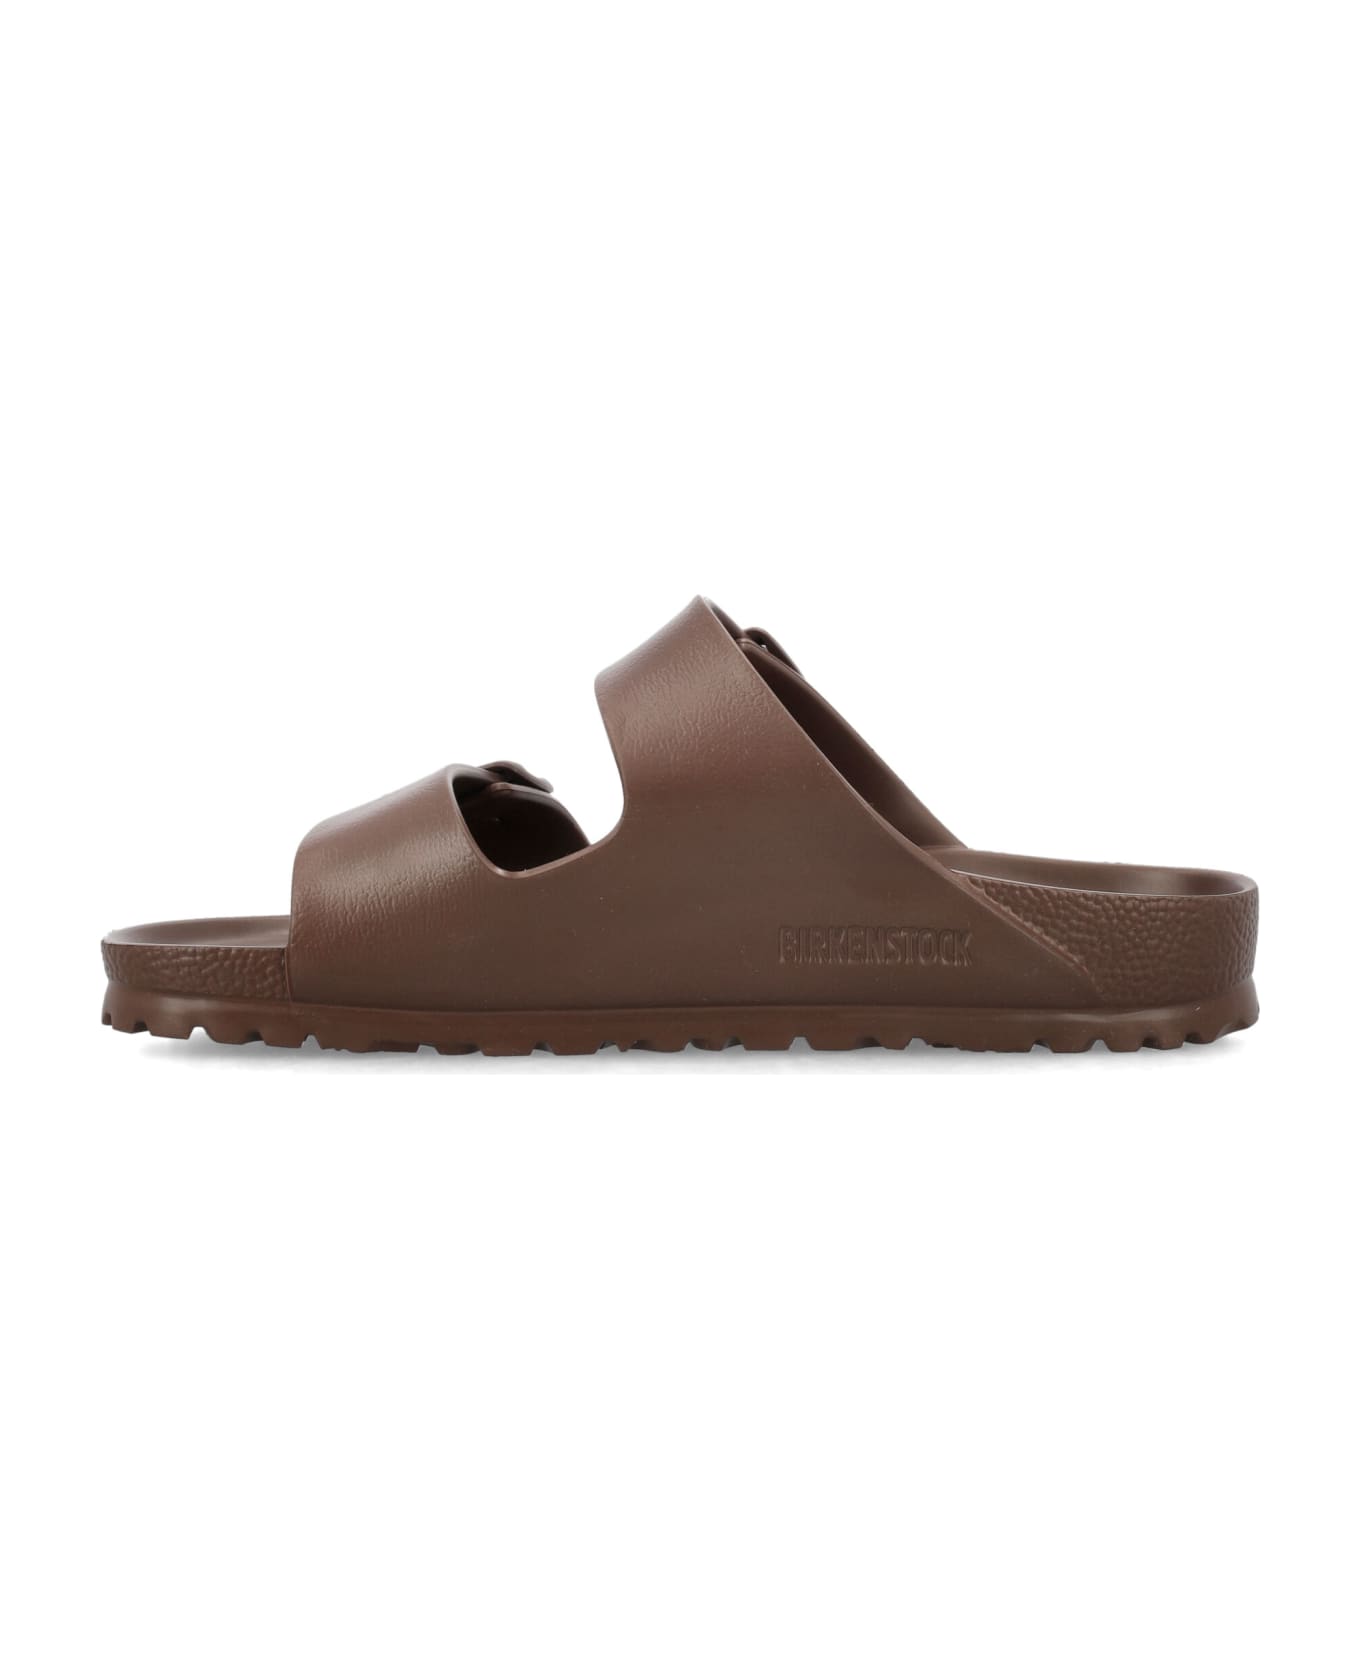 Birkenstock Arizona Essentials Sandals - ROAST BROWN